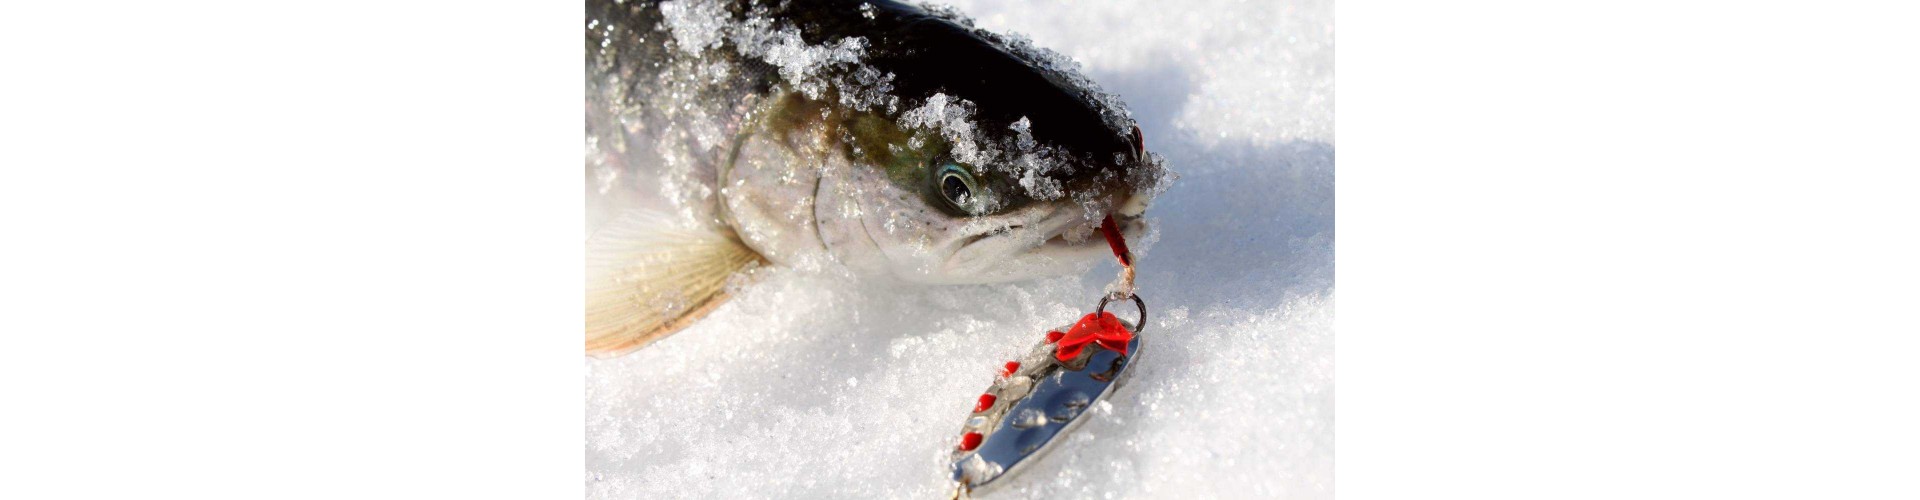 Зимняя рыбалка с использованием блесен: особенности подхода